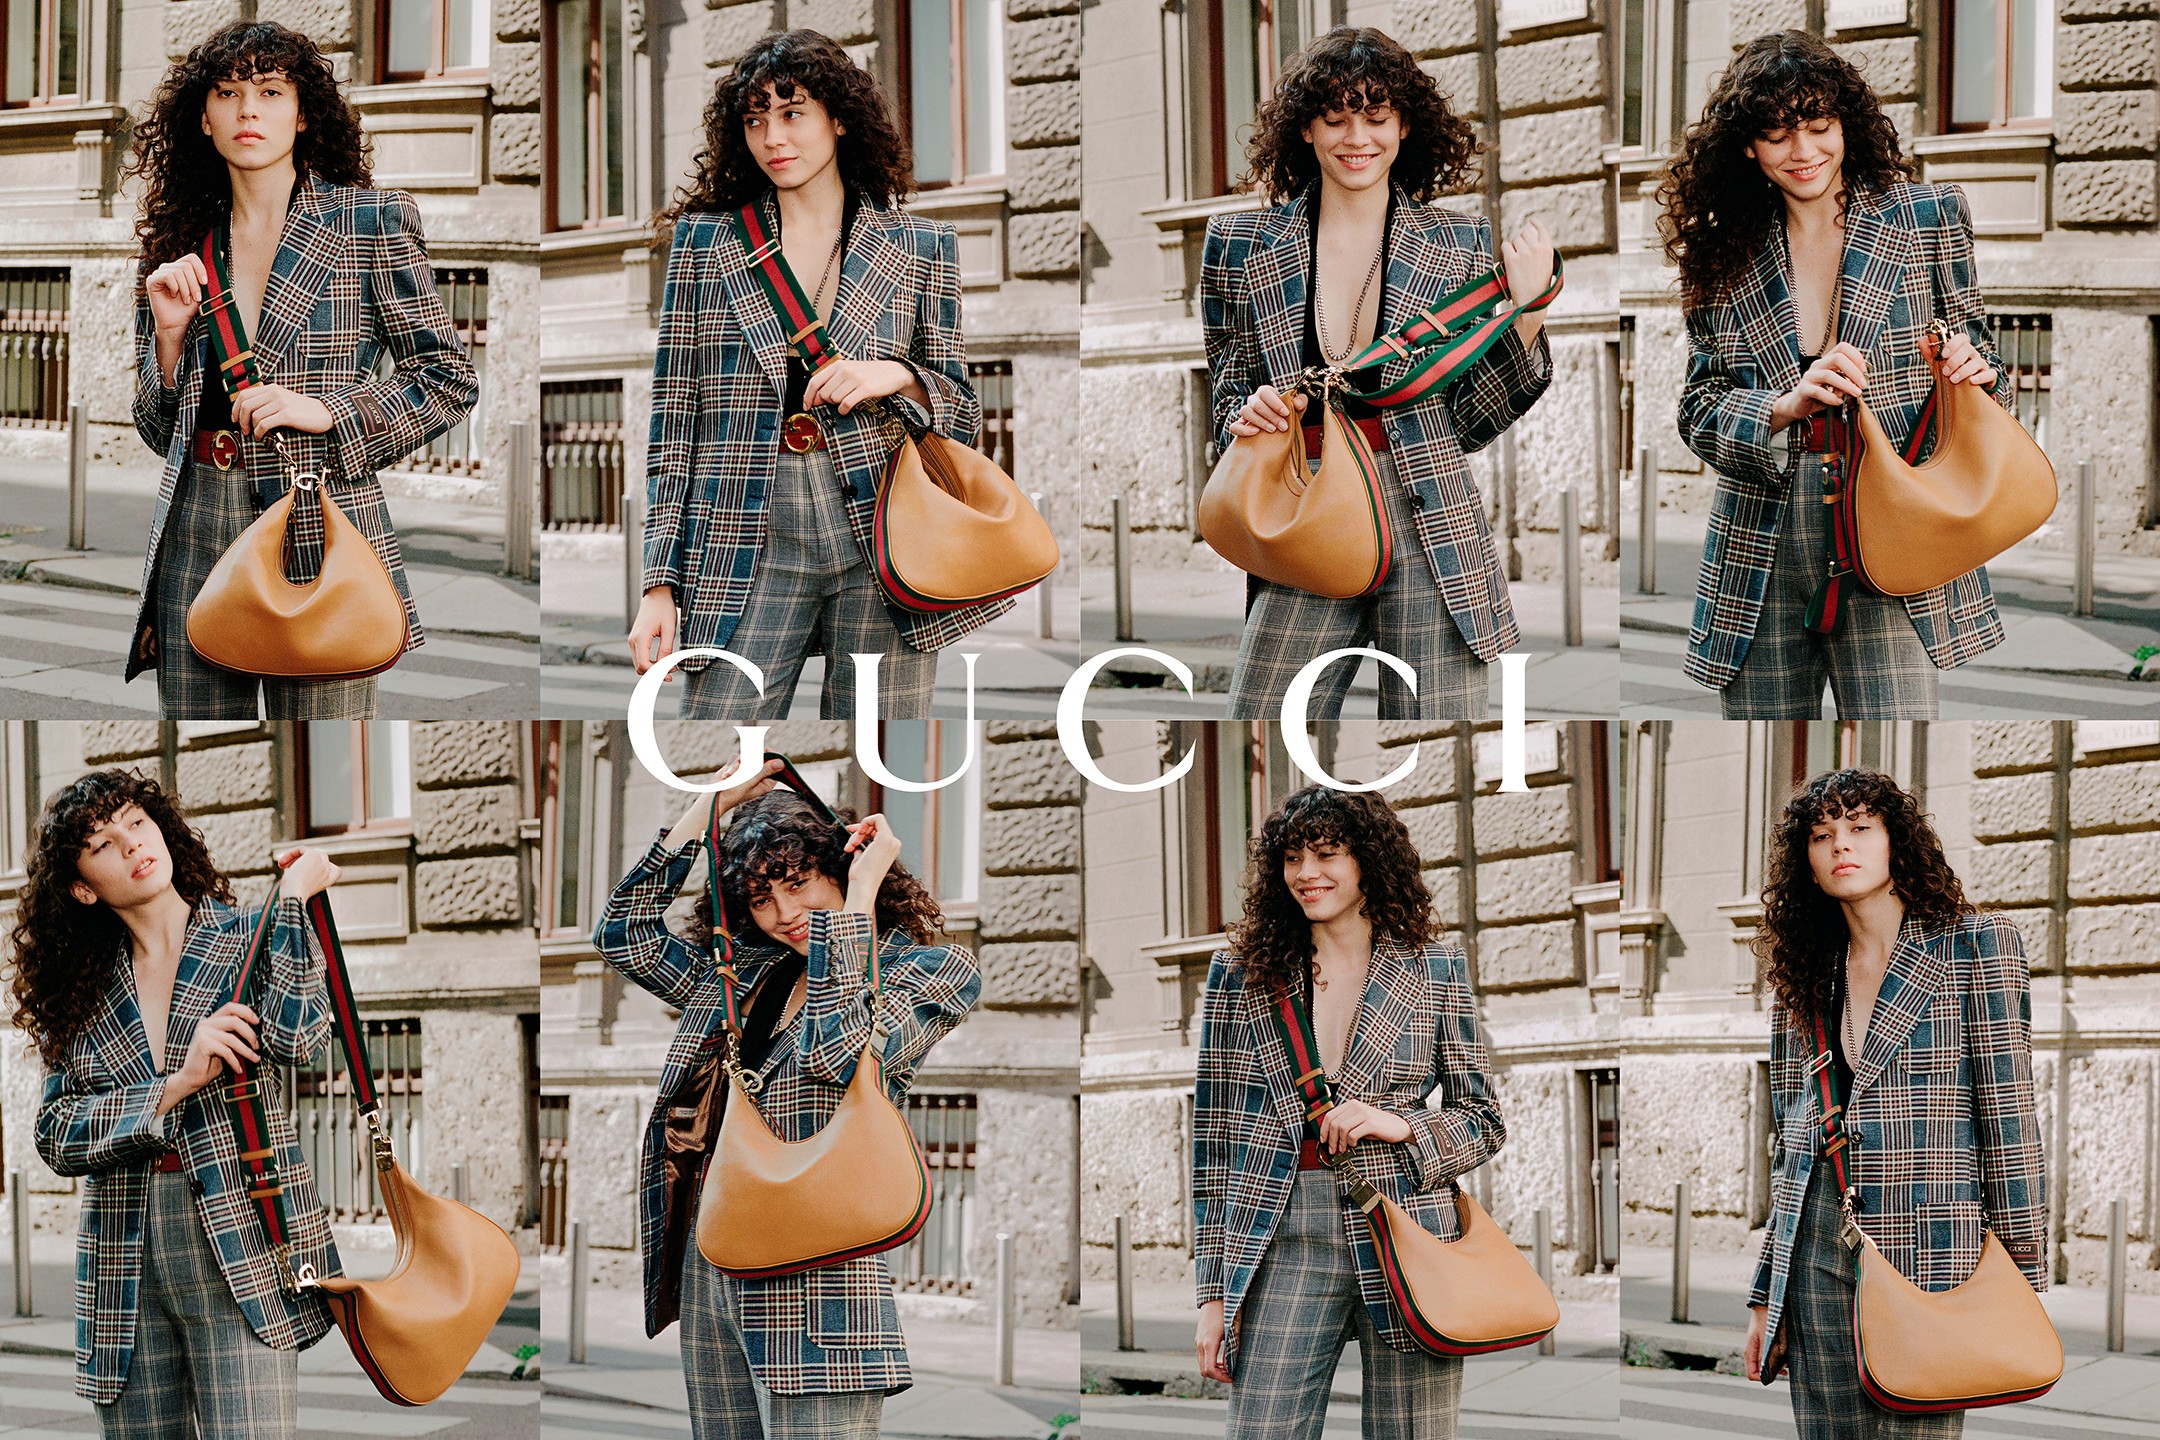 Gucci Attache small shoulder bag